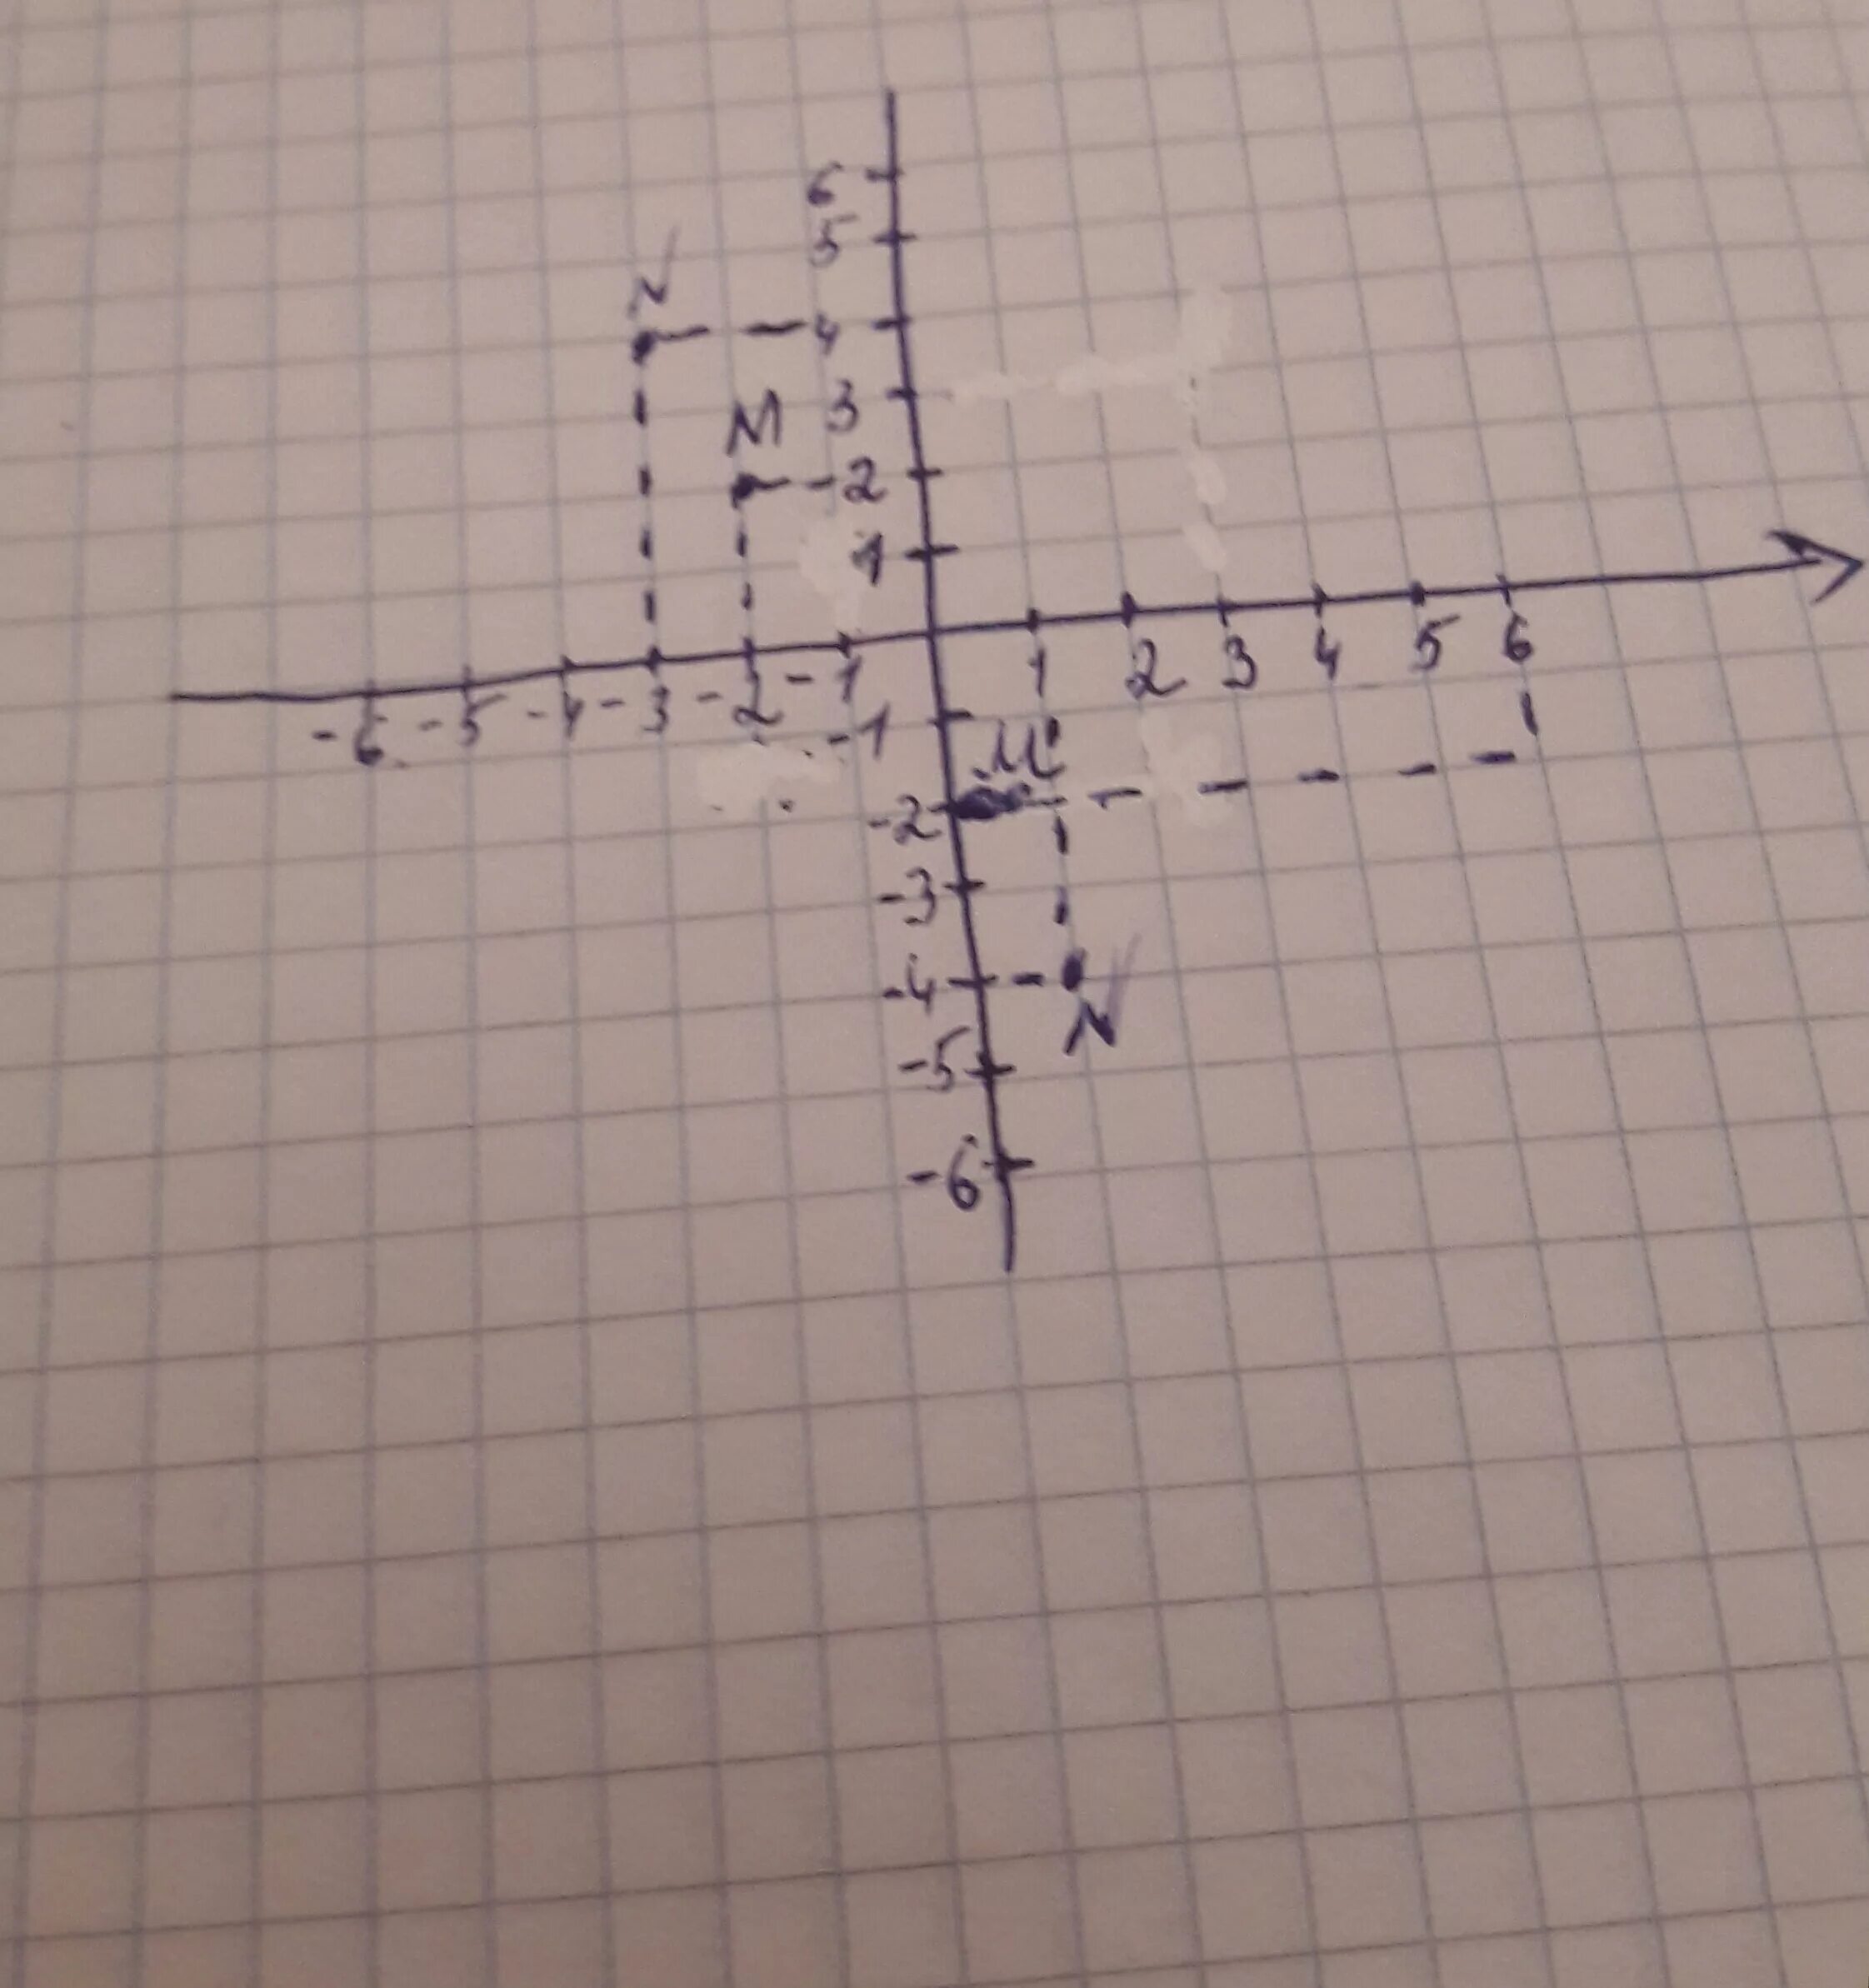 Отметьте на координатной плоскости точки 2 5. Отметьте на координатной плоскости точки м. Отметьте на координатной плоскости точки м -6 3. Отметьте на координатной плоскости точки а -4 2. Отметьте на координатной плоскости точки м 4 3.